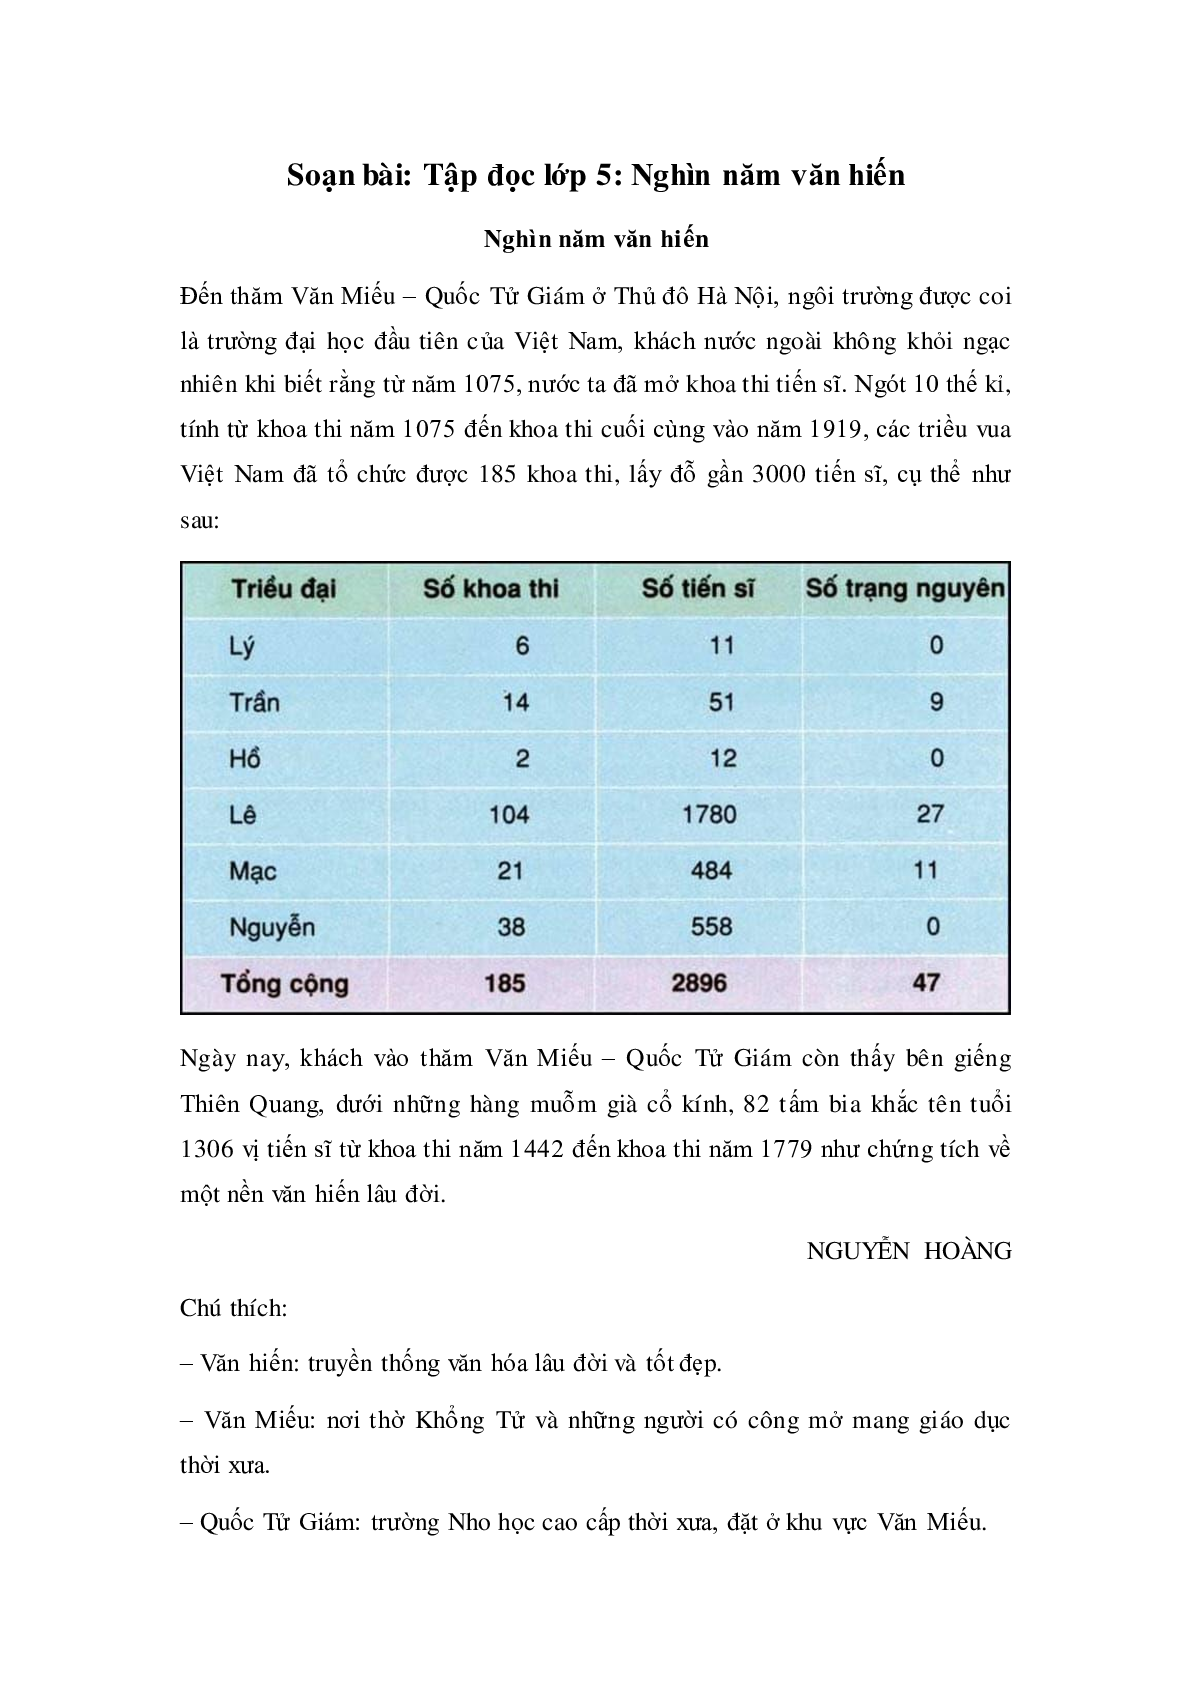 Soạn Tiếng Việt lớp 5: Tập đọc: Nghìn năm văn hiến mới nhất (trang 1)